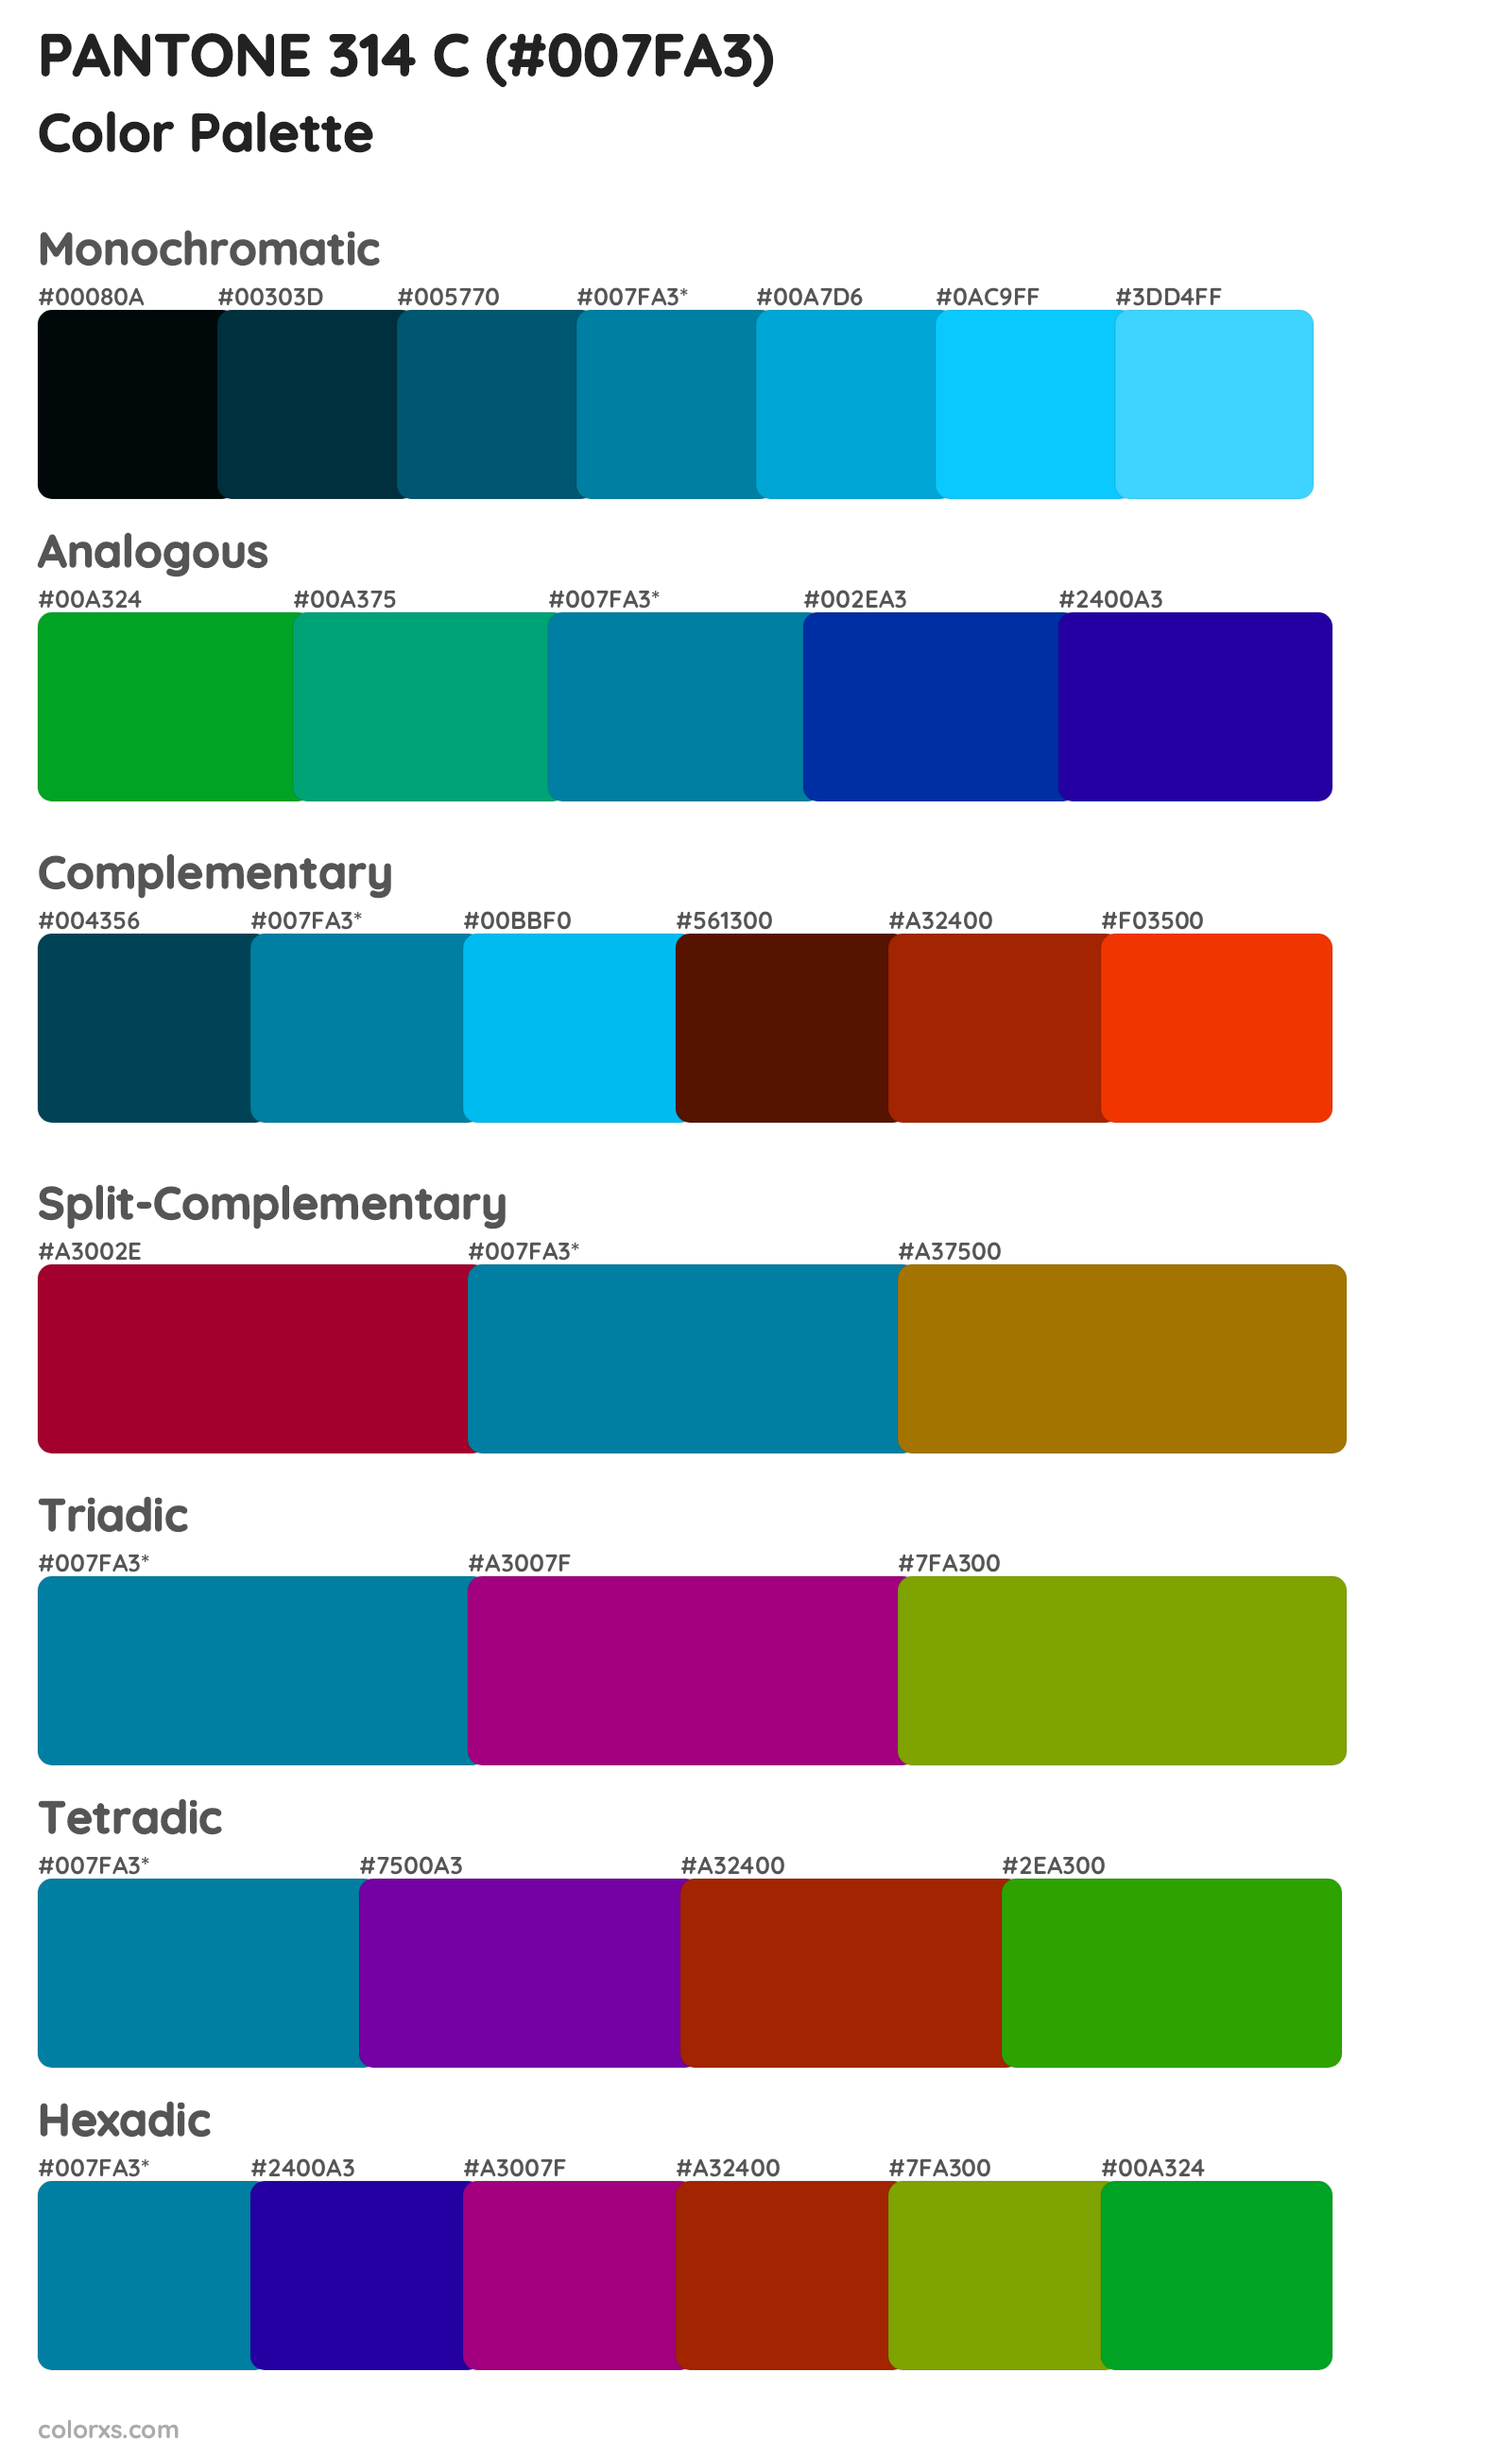 PANTONE 314 C Color Scheme Palettes